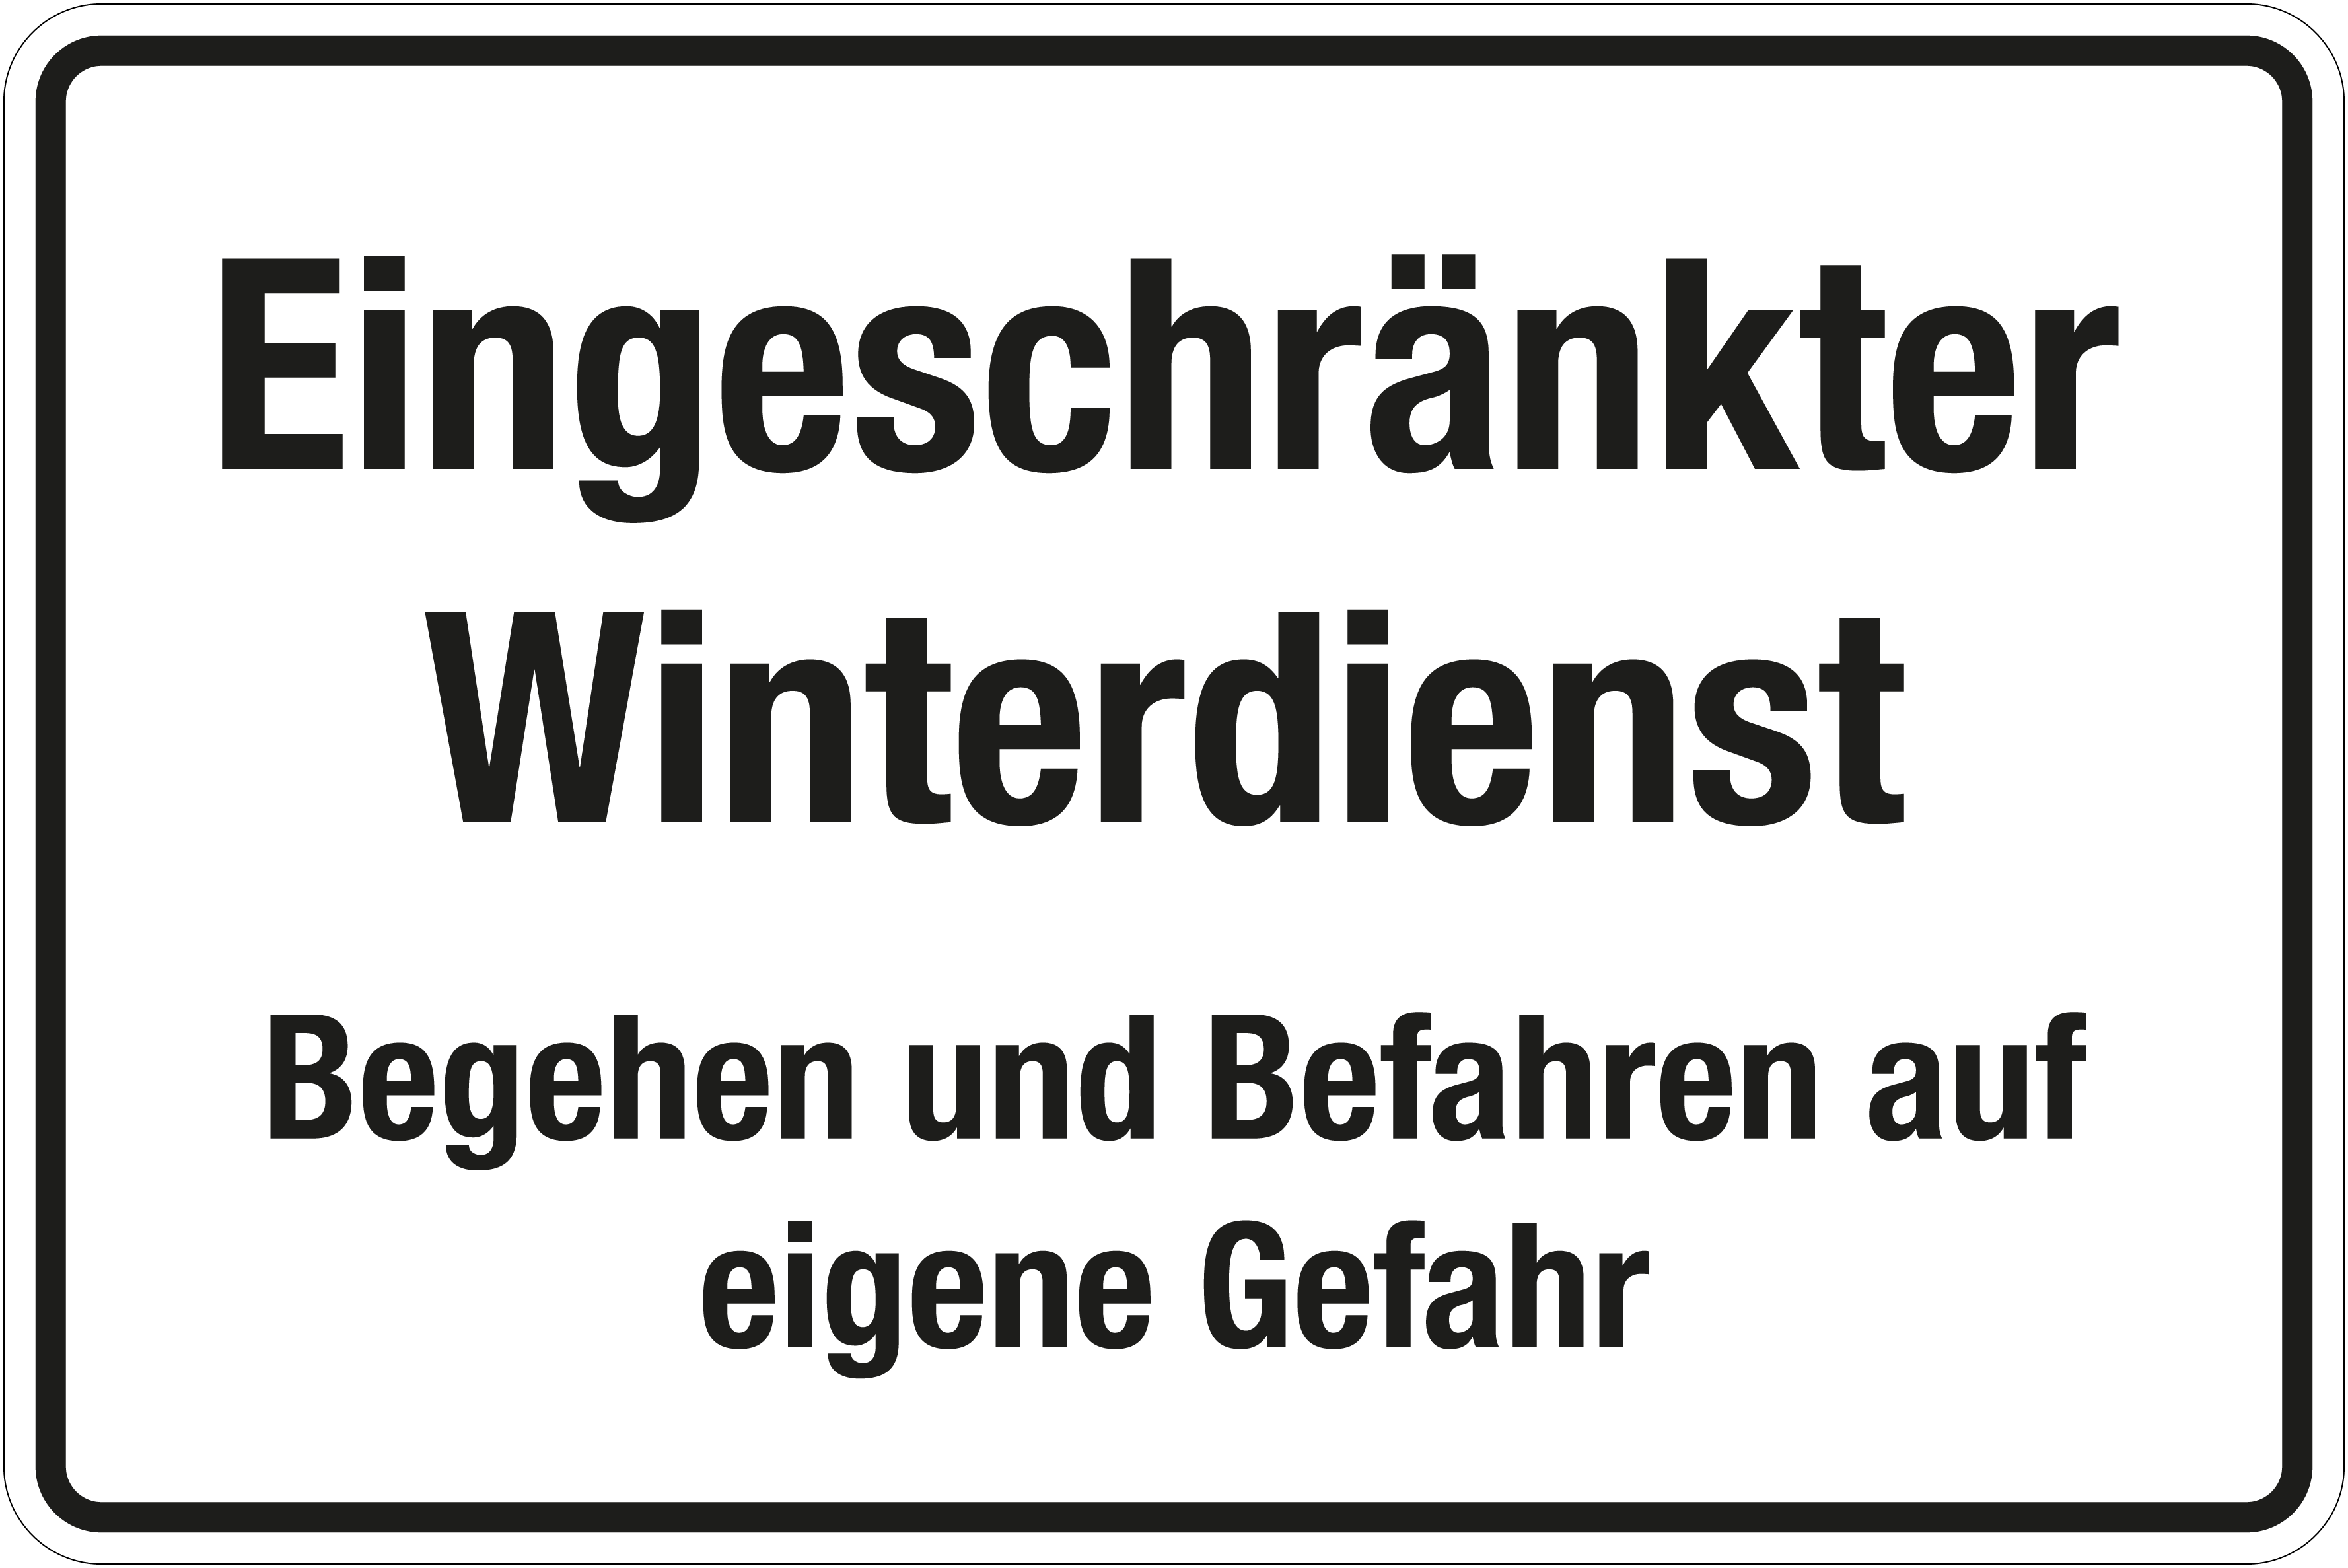 Winterschild - Eingeschränkter Winterdienst  - Folie Selbstklebend - 20 x 30 cm